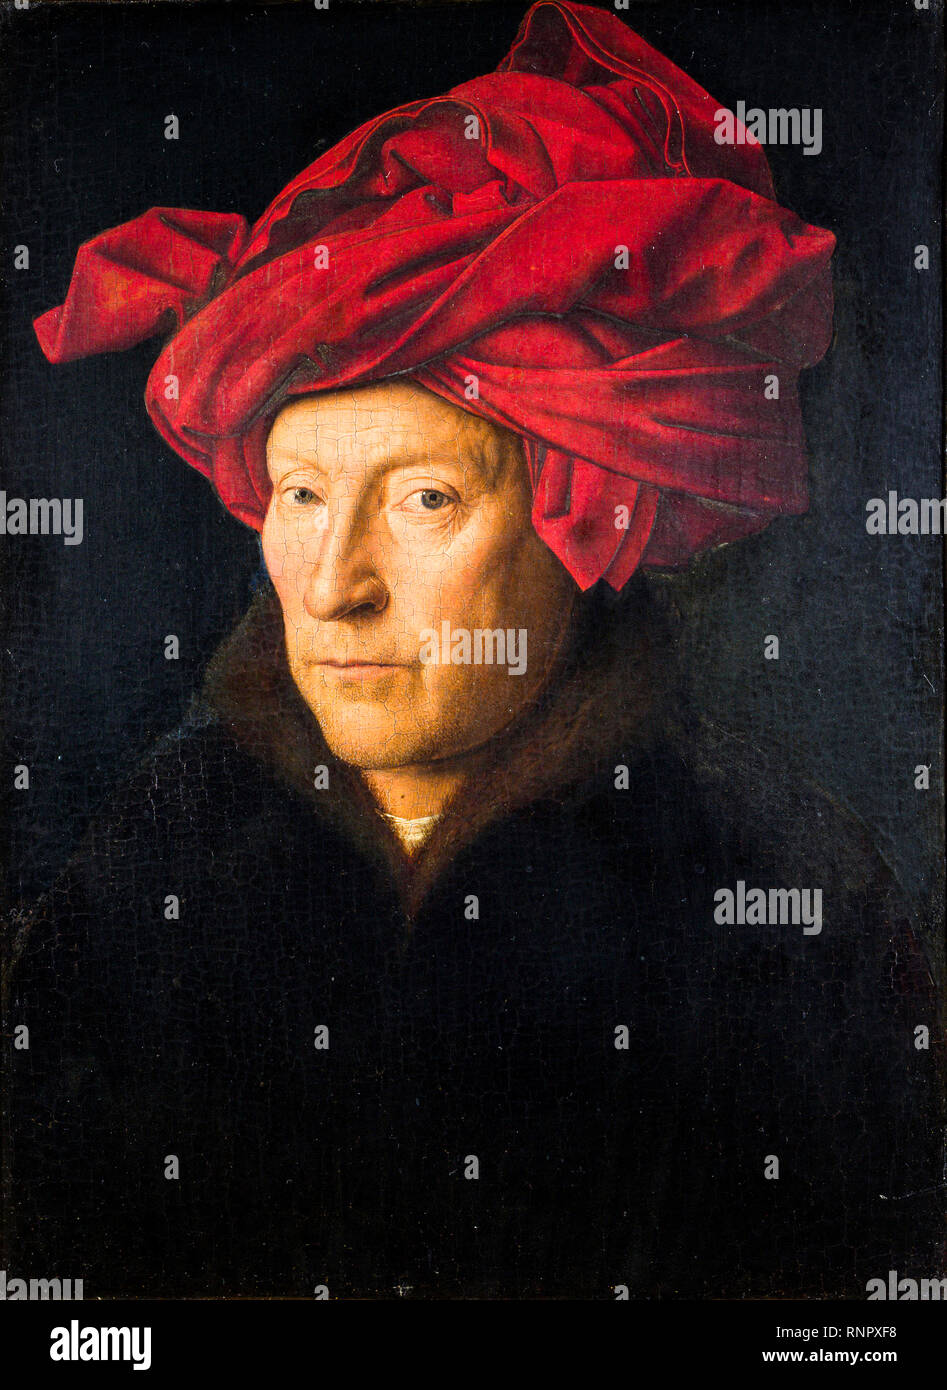 Porträt eines Mannes. Wahrscheinlich ein Selbstporträt des flämischen Künstlers Jan Van Eyck (vor 1390-1441), Gemälde in Öl auf Tafel, 1433 Stockfoto